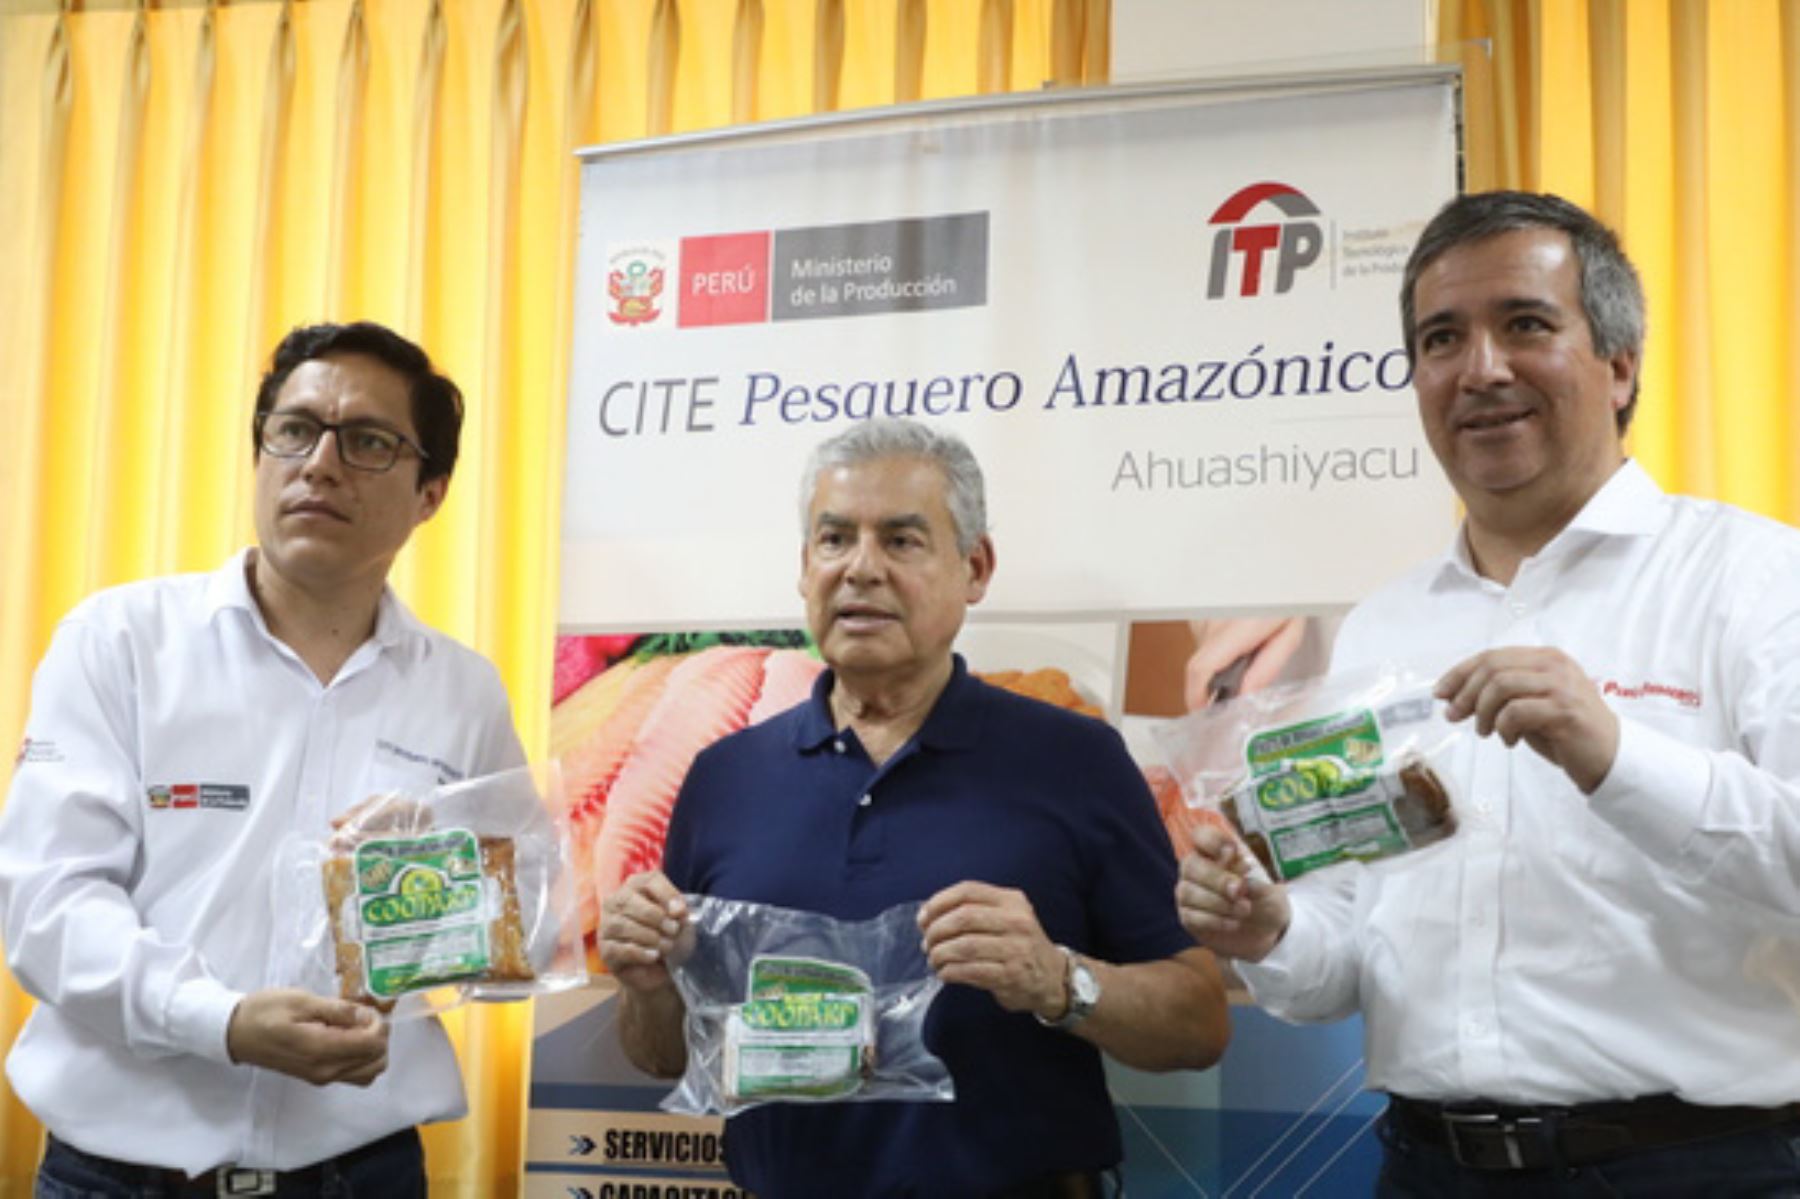 El ministro de la Producción, Raúl Pérez-Reyes, anunció que el Instituto Tecnológico de la Producción (ITP) invertirá más de 6 millones de soles en el equipamiento y mejoramiento del Centro de Innovación Productiva y Transferencia Tecnológica (CITE) Acuícola Ahuashiyacu y el CITE Pesquero Amazónico, ambos ubicados en la región San Martín.